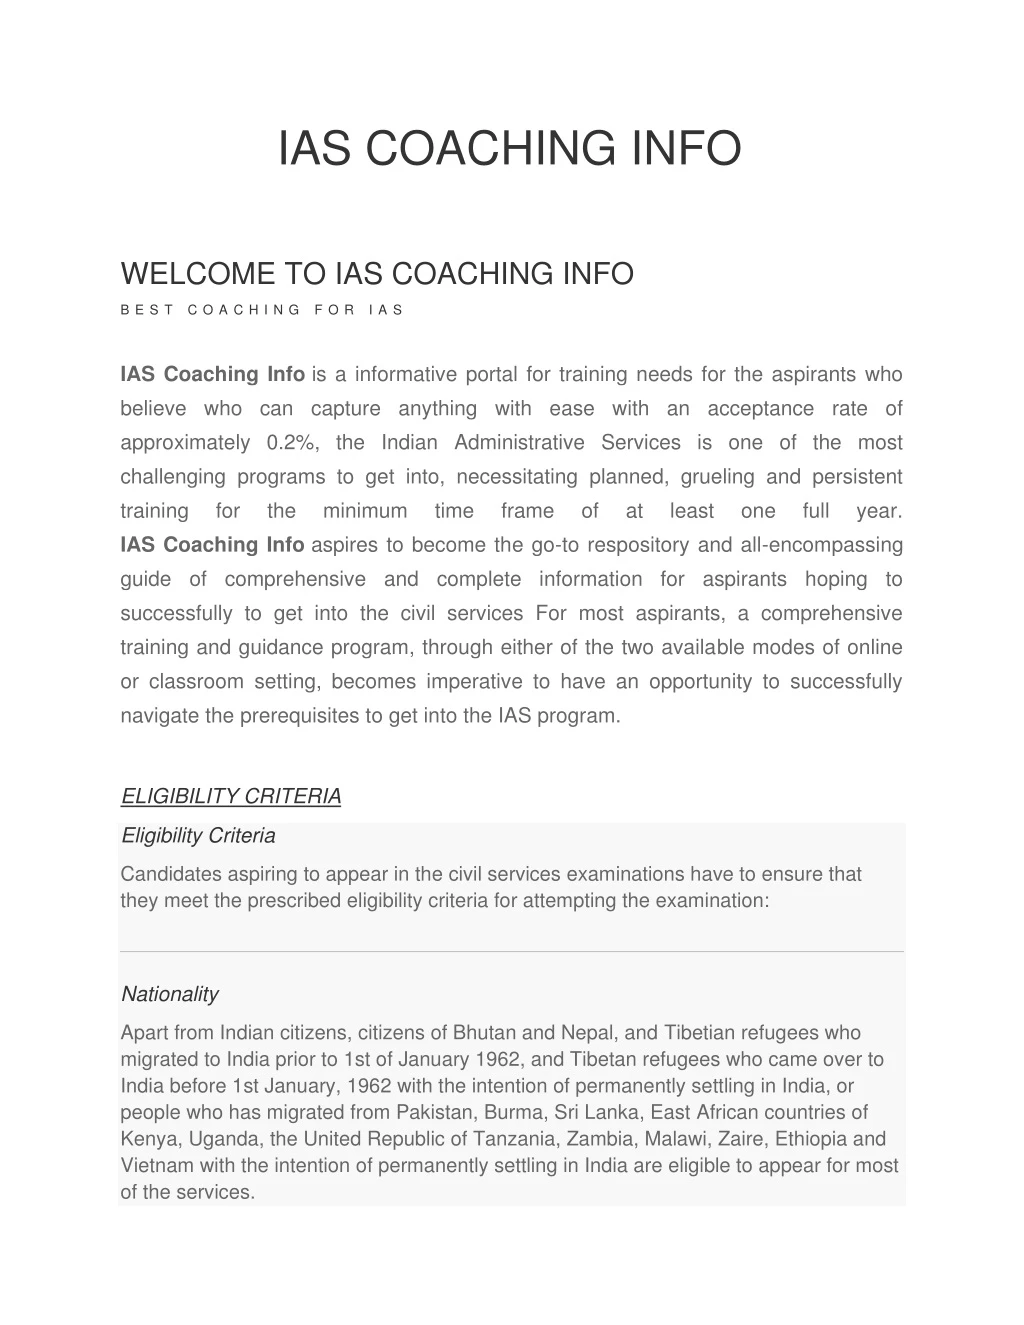 ias coaching info